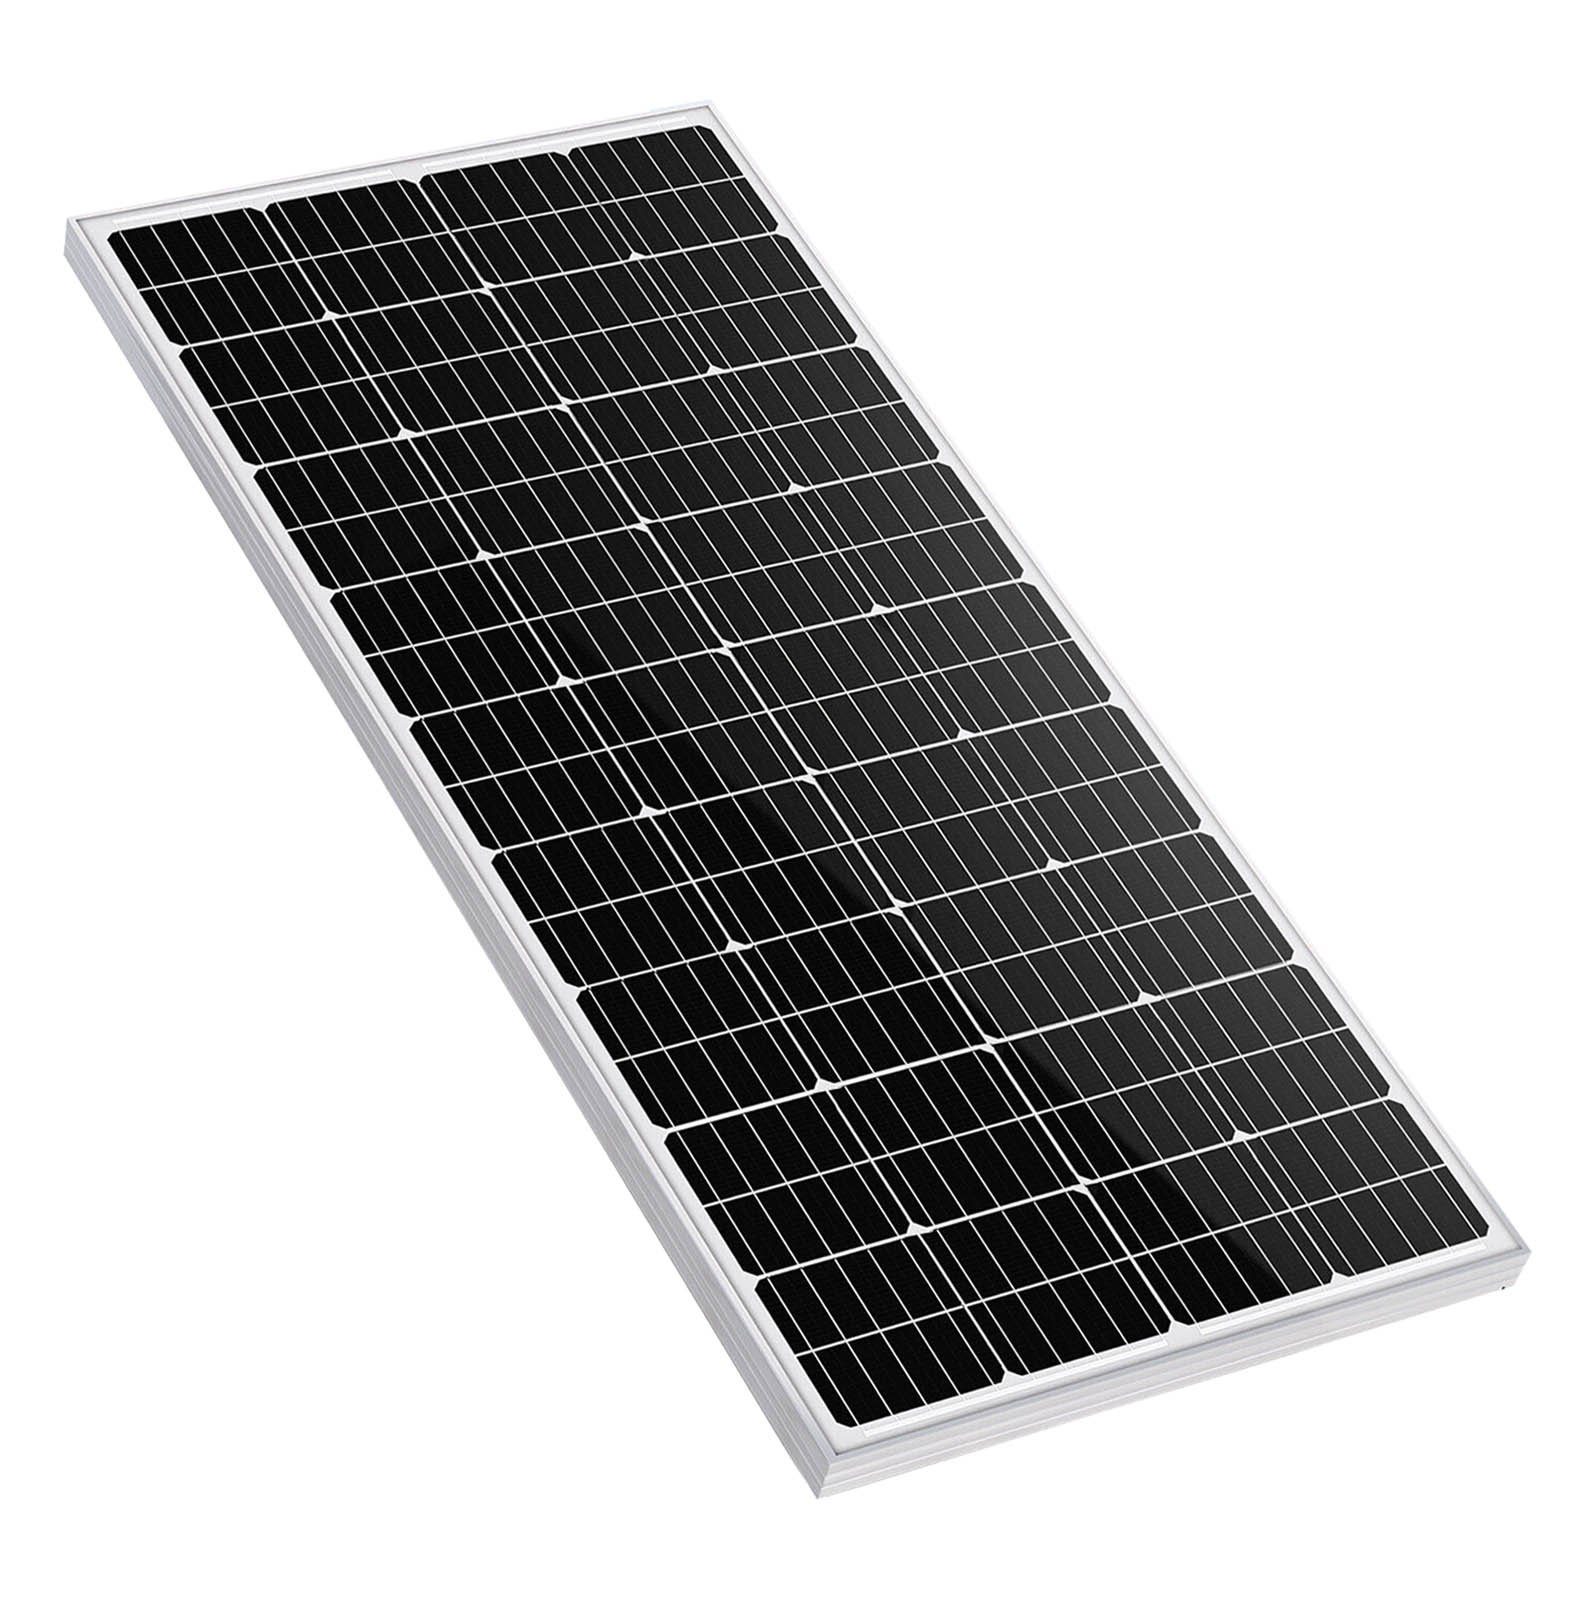 GLIESE Solarmodul 450W 150W Mono Solarmodul Solarpanel